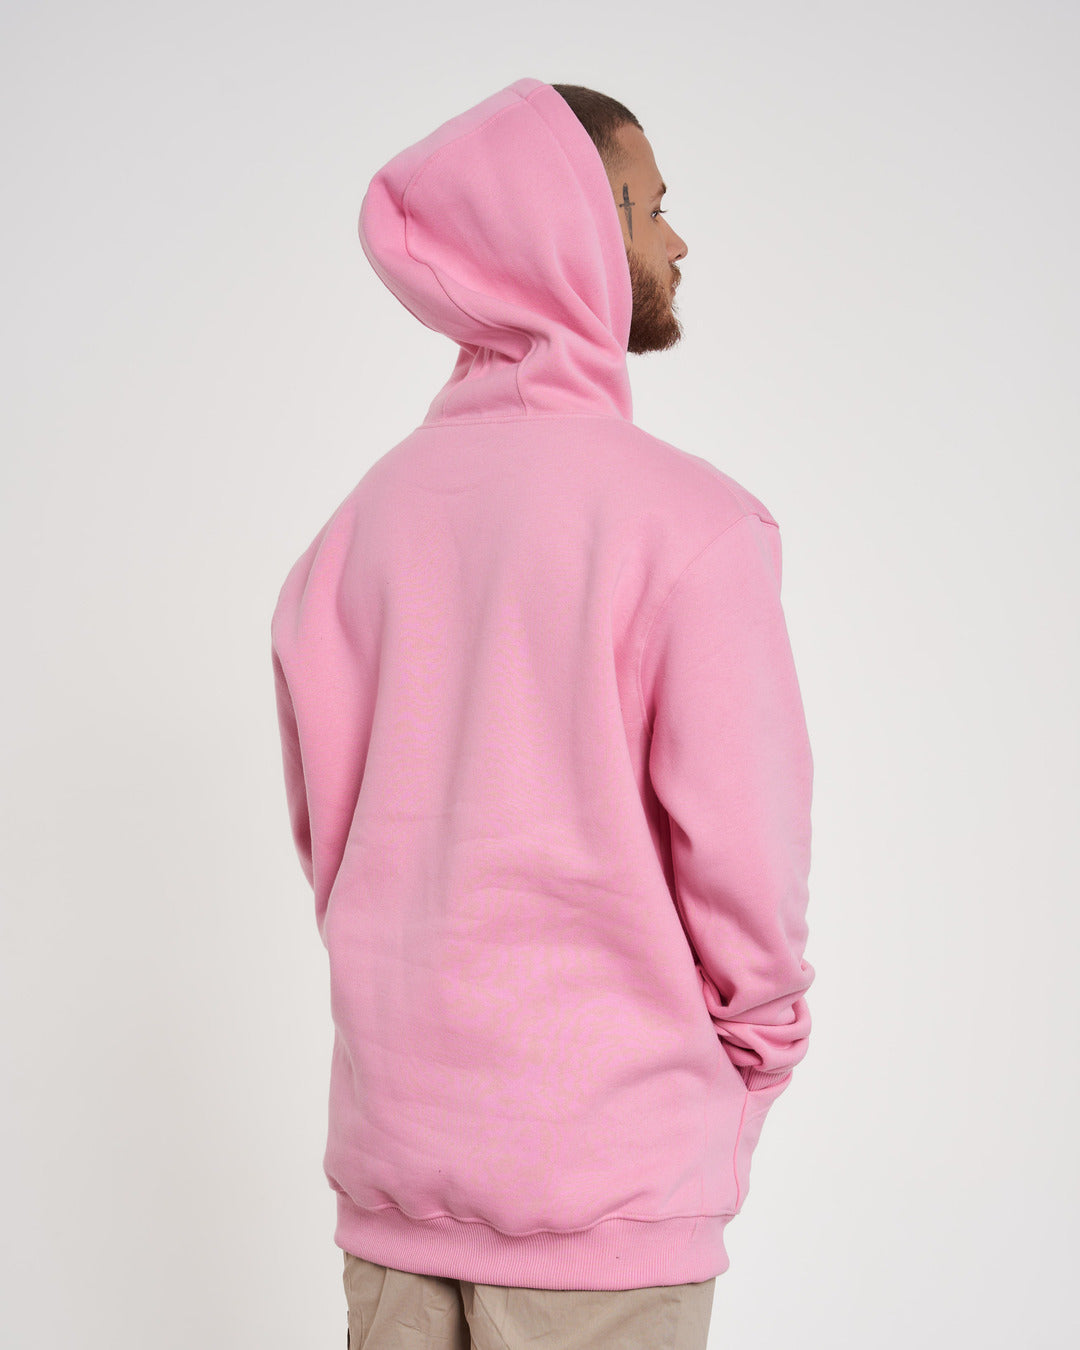 Hooded Kangaroo Sweatshirt - Fun Rose